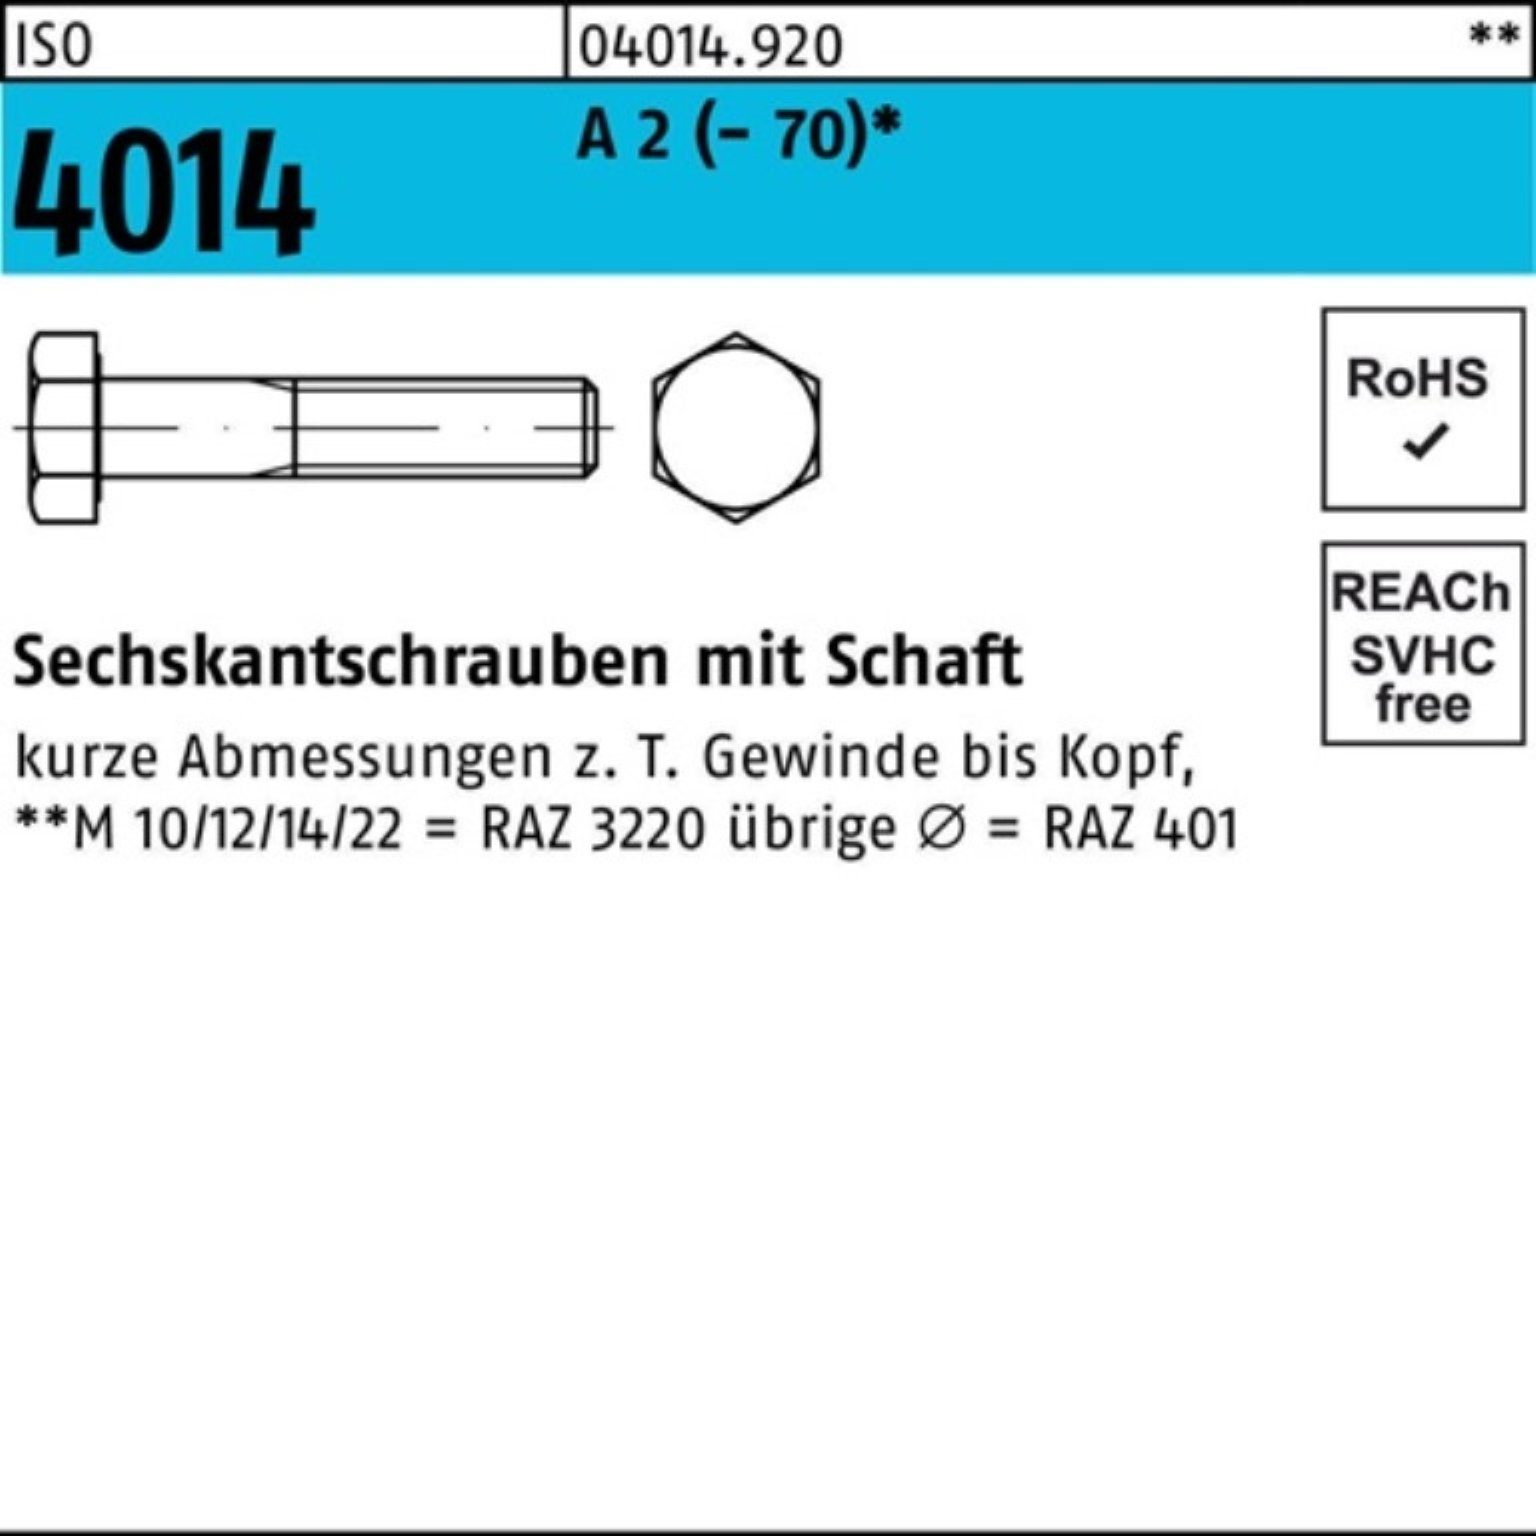 Bufab Sechskantschraube 100er Pack Sechskantschraube ISO 4014 Schaft M20x 230 A 2 (70) 1 St